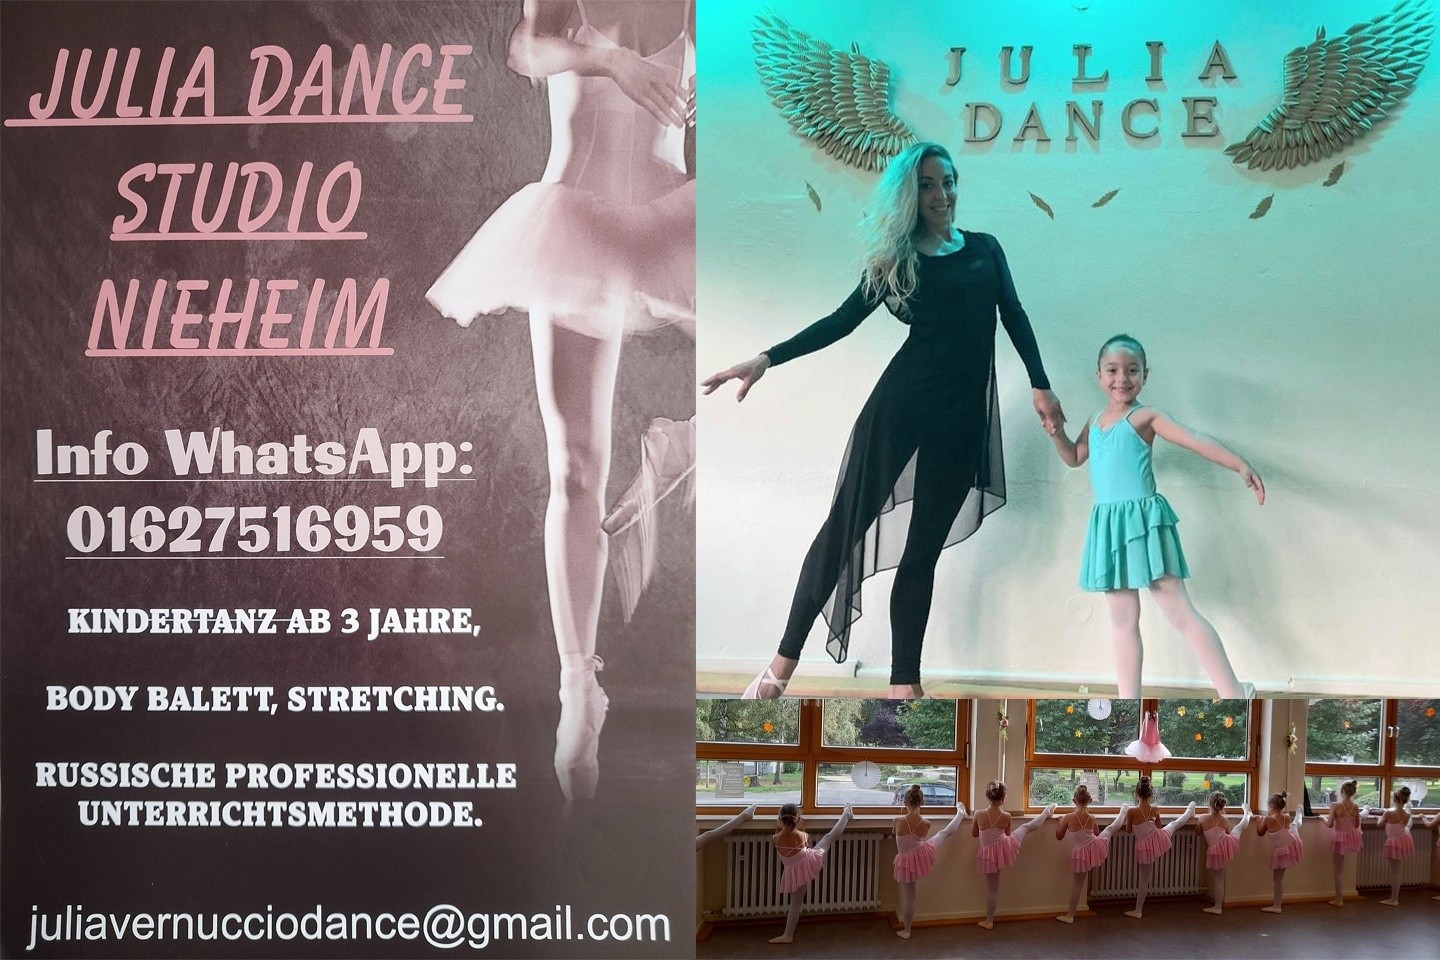 Julia Dance Studio Nieheim - Kindertanz ab 3 Jahre und mehr